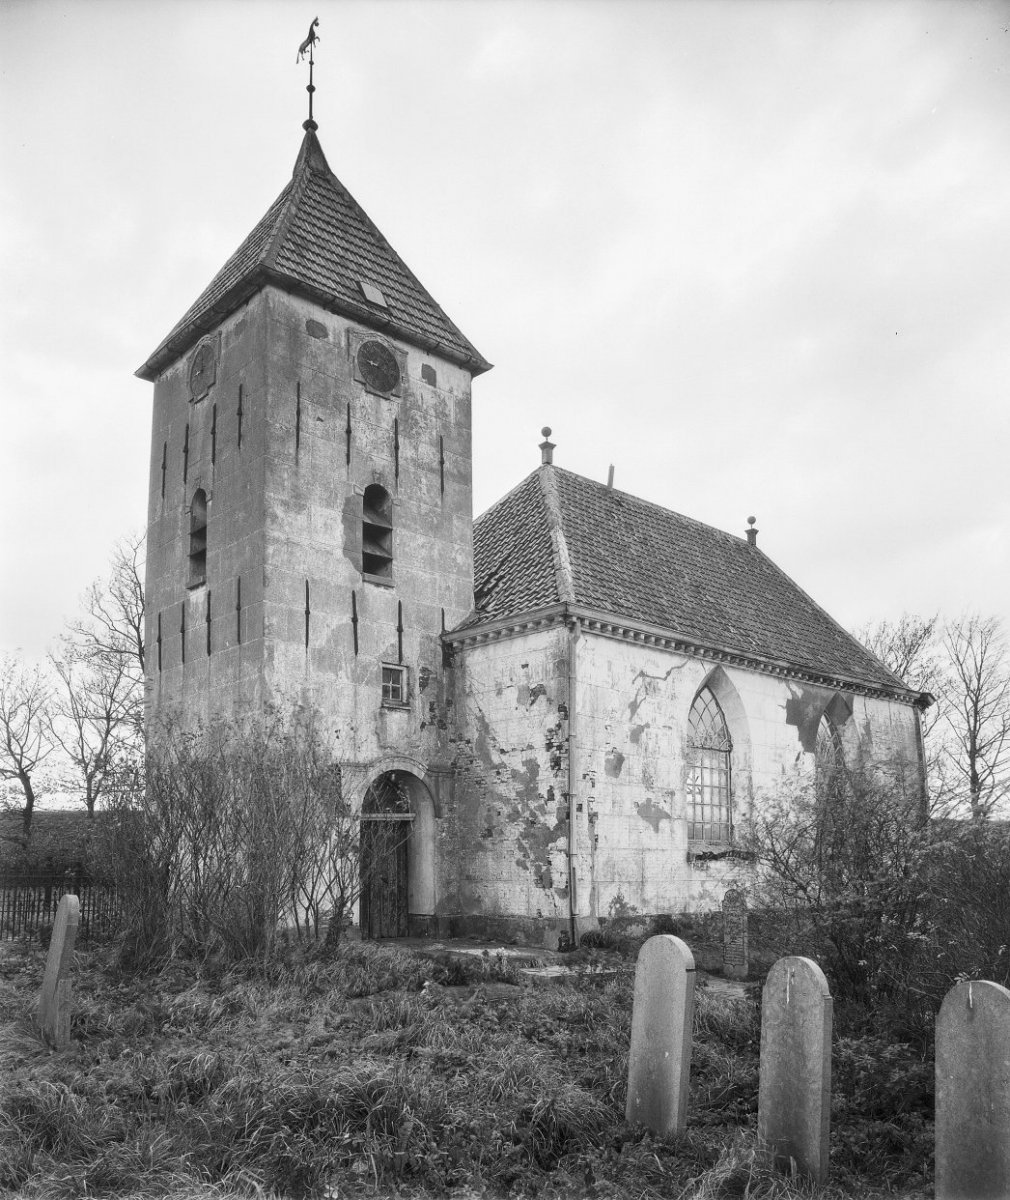 De voormalige kerk met toren van Oterdum gezien vanaf het noorden. Bron: Rijksdienst voor Cultureel Erfgoed, 1960. Foto: G. Th. Delemarre.